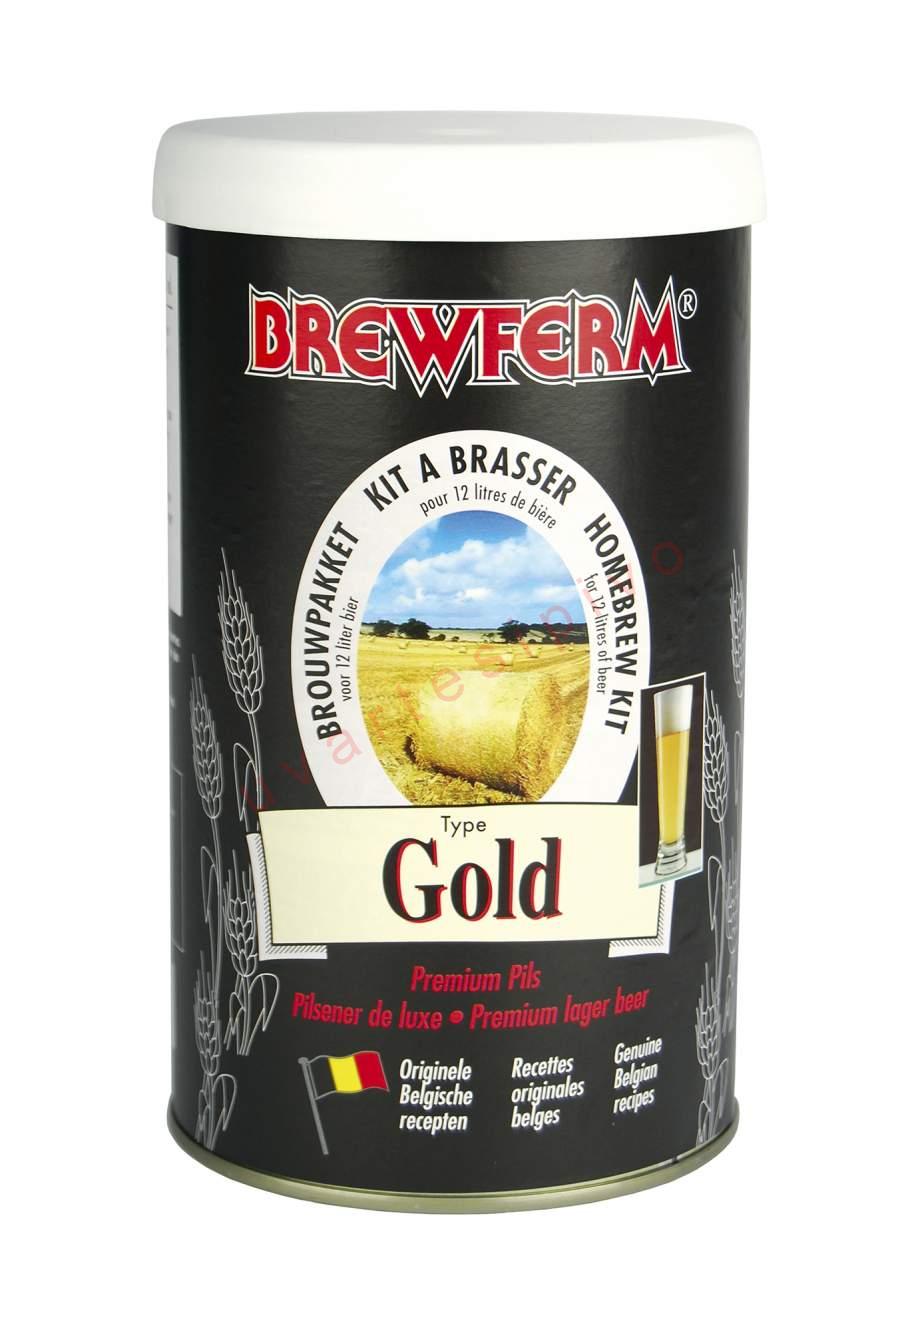 Pivo Brewferm Gold